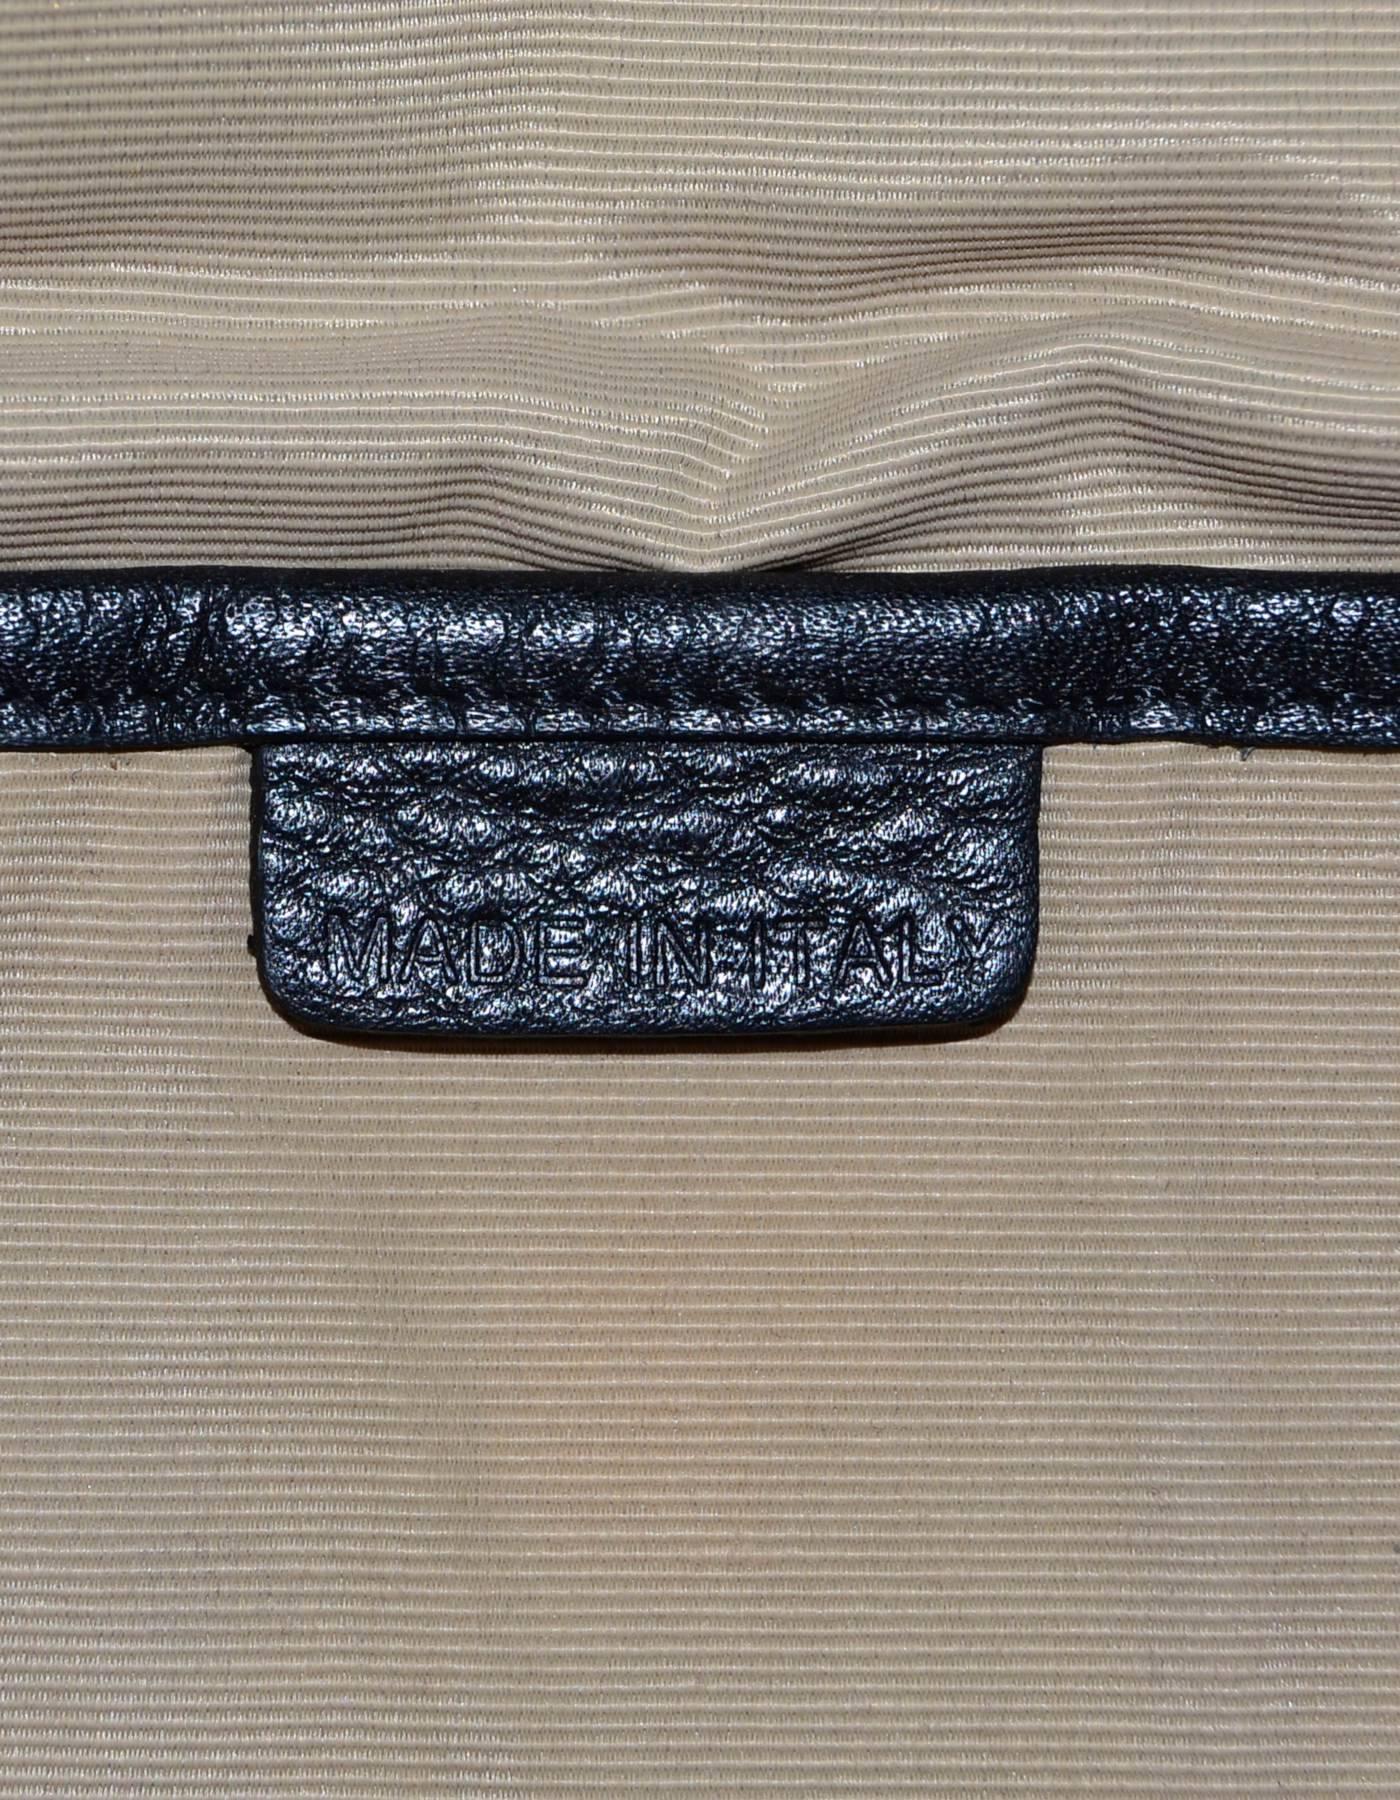 Women's or Men's Burberry Prorsum Patchwork Nova Plaid Leather Tote Bag w. Dust Bag